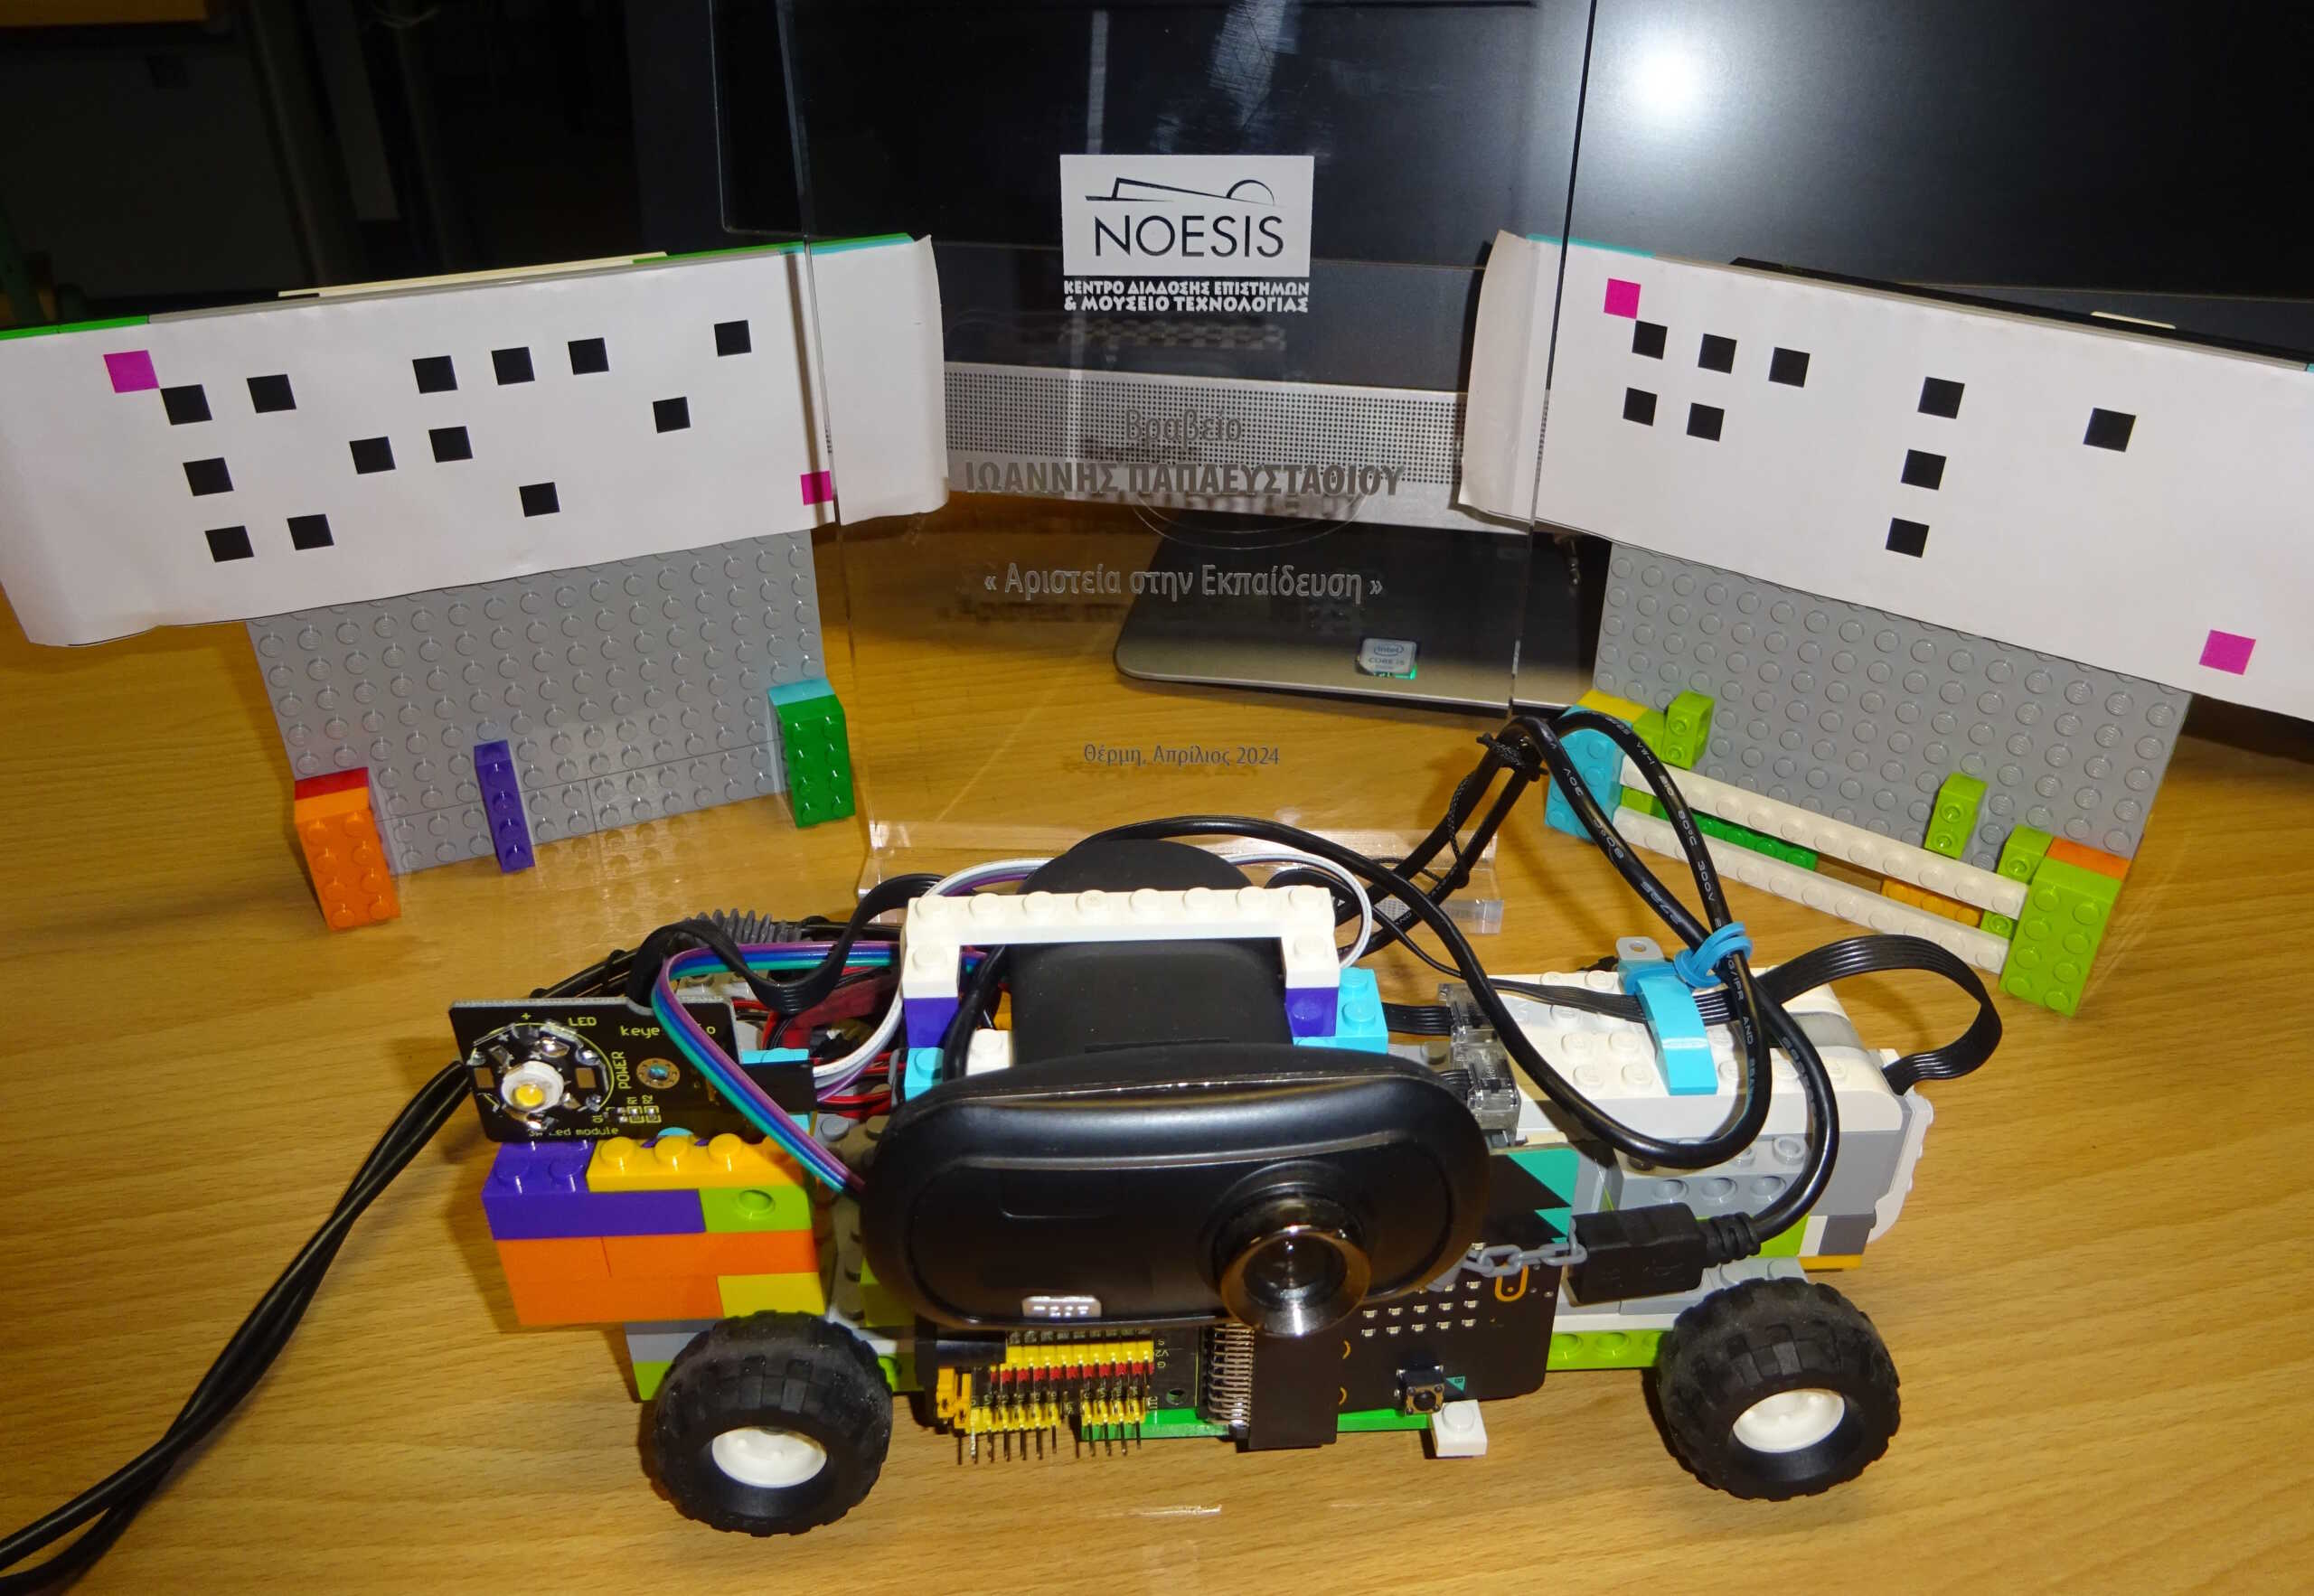 Θεσσαλονίκη: Μαθητές δημοτικού έφτιαξαν ρομπότ που βοηθά άτομα με προβλήματα όρασης να ψωνίζουν